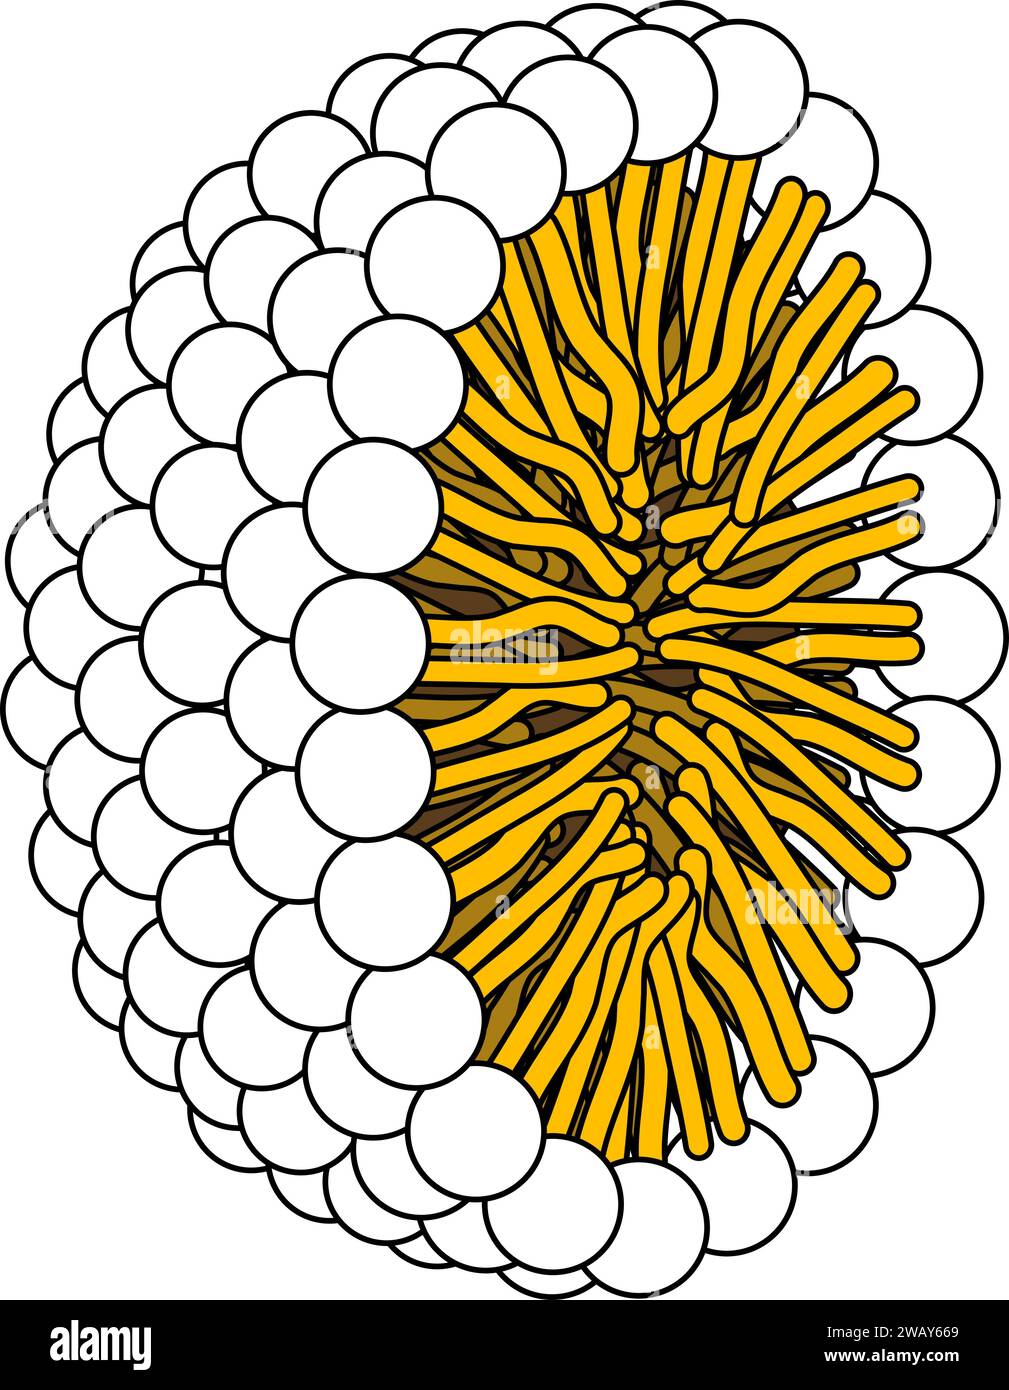 Structure de la molécule phospholipidique en micelle. Illustration vectorielle. Illustration de Vecteur